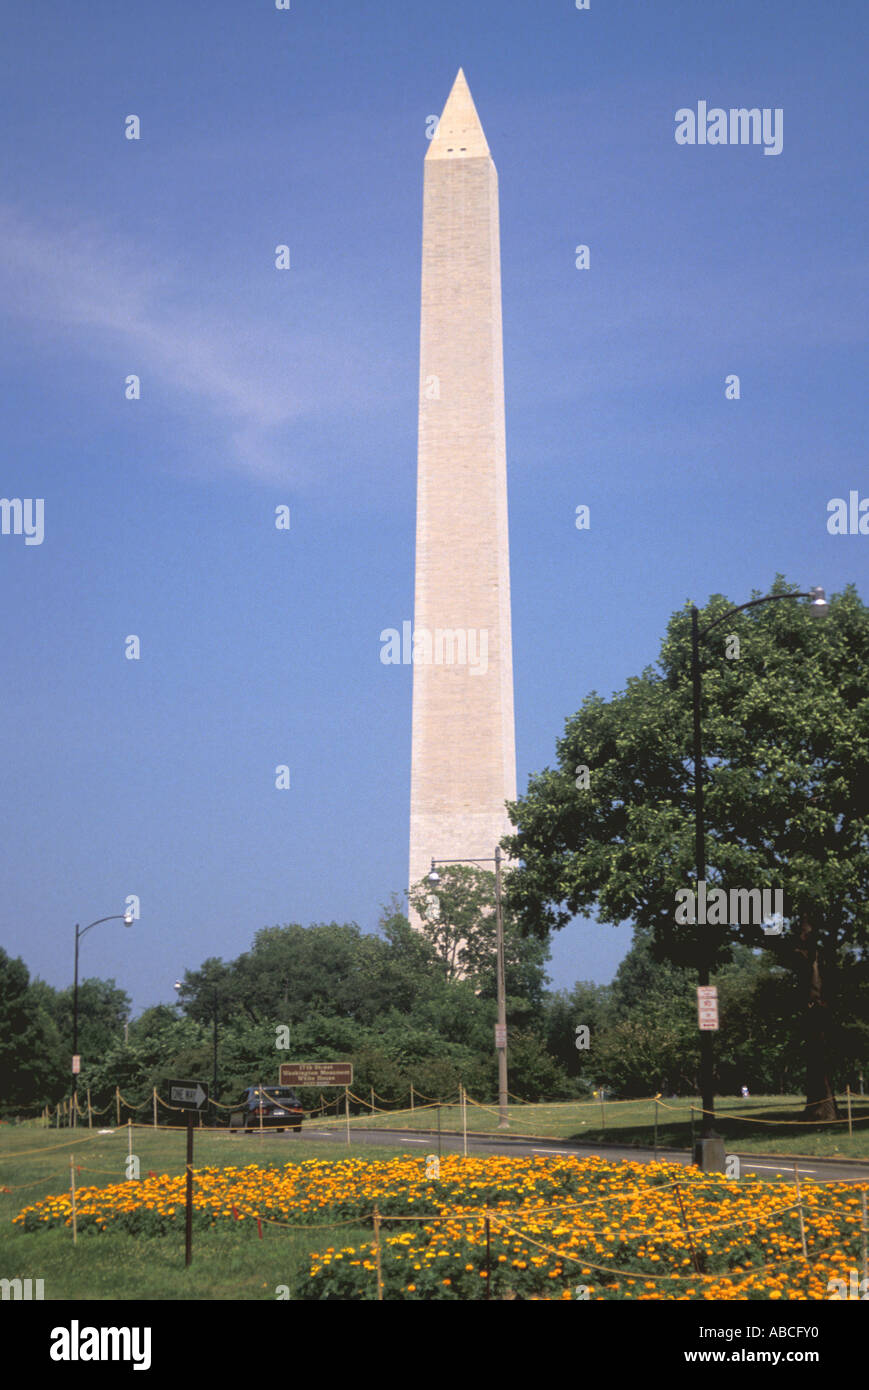 Washington DC washingon monument Stock Photo